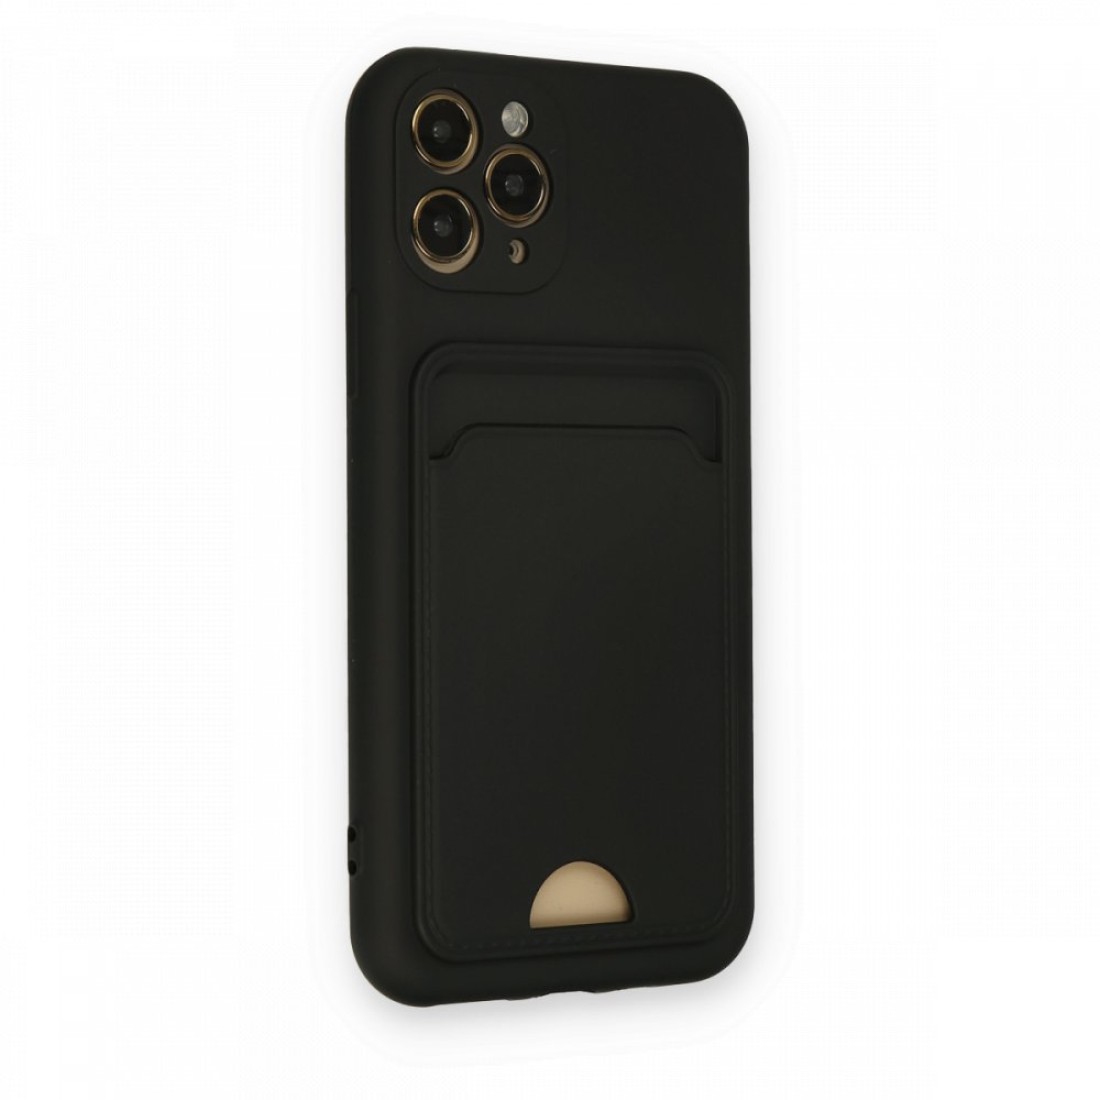 Apple iPhone 11 Pro Kılıf Kelvin Kartvizitli Silikon - Siyah